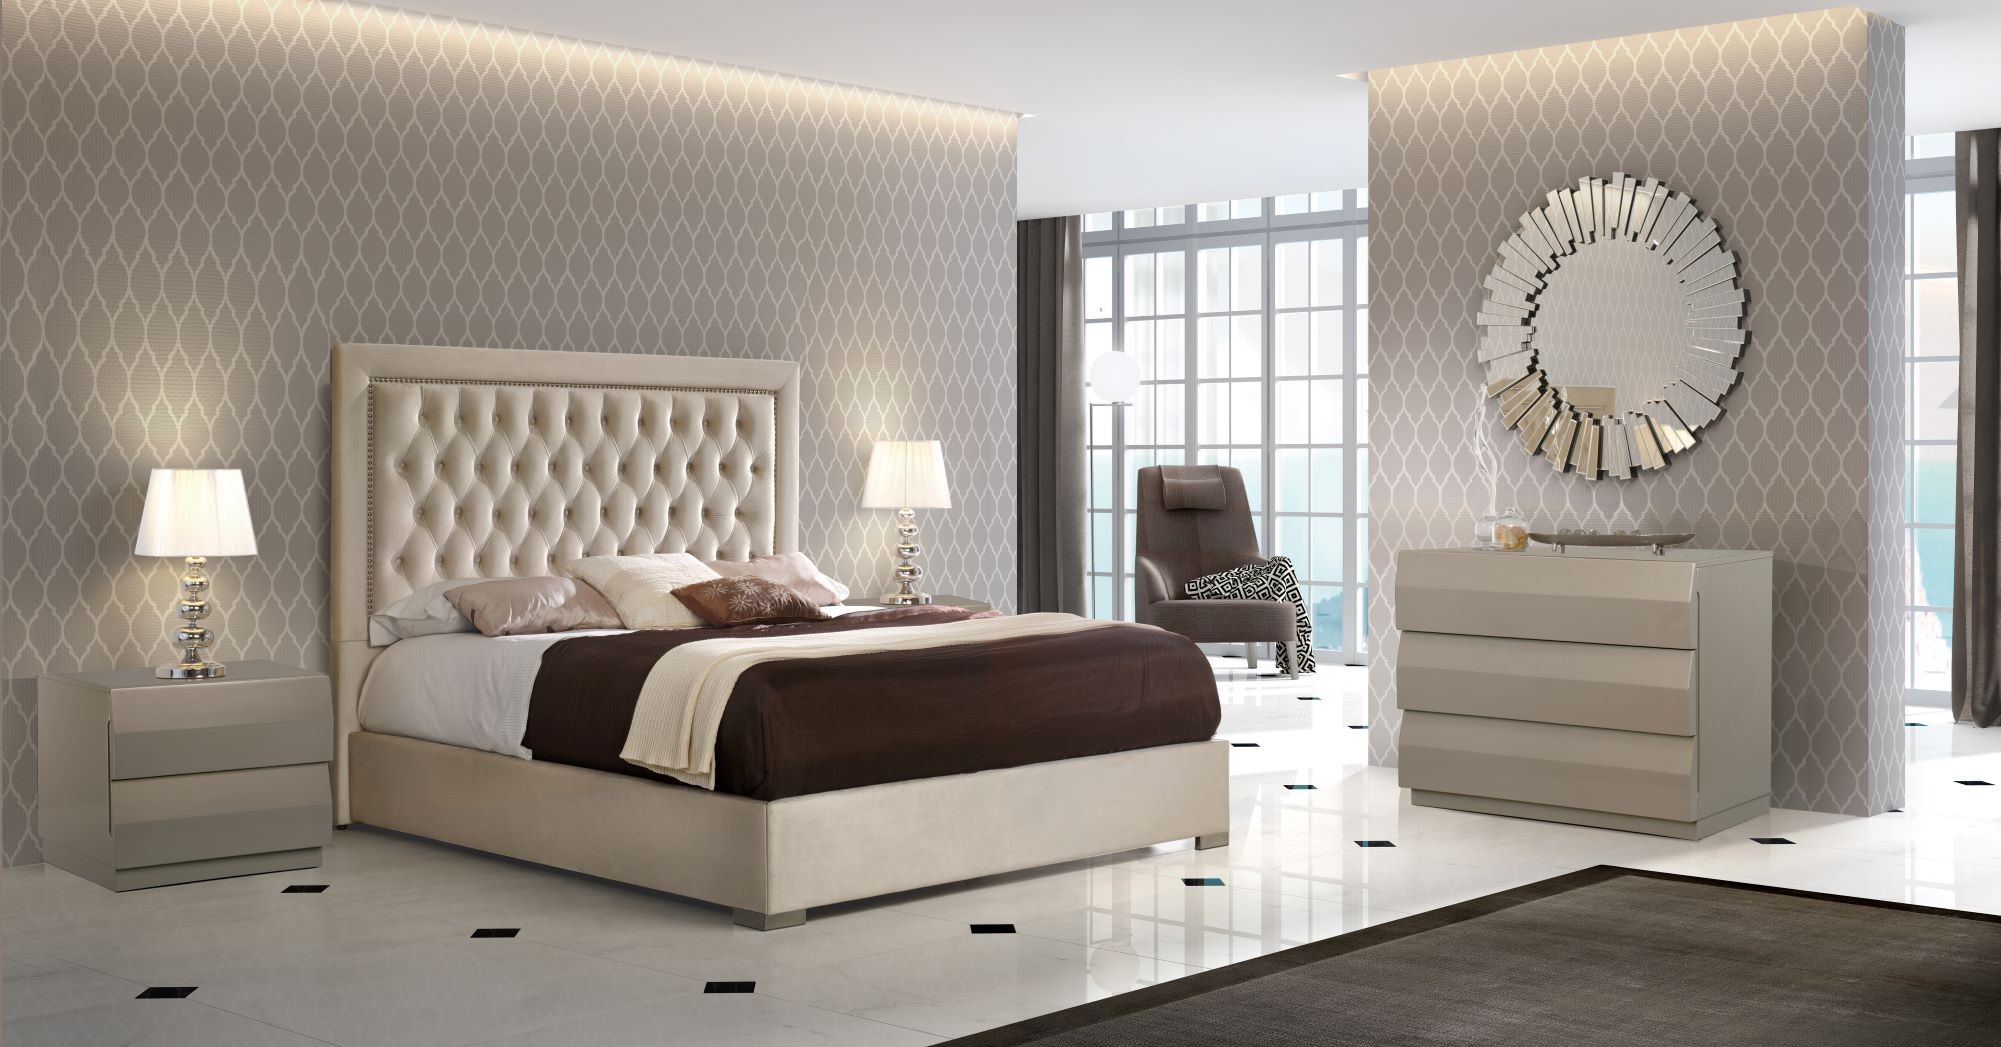 Estila Chesterfield luxusní manželská postel Adagio s čalouněním as úložným prostorem 150-180cm